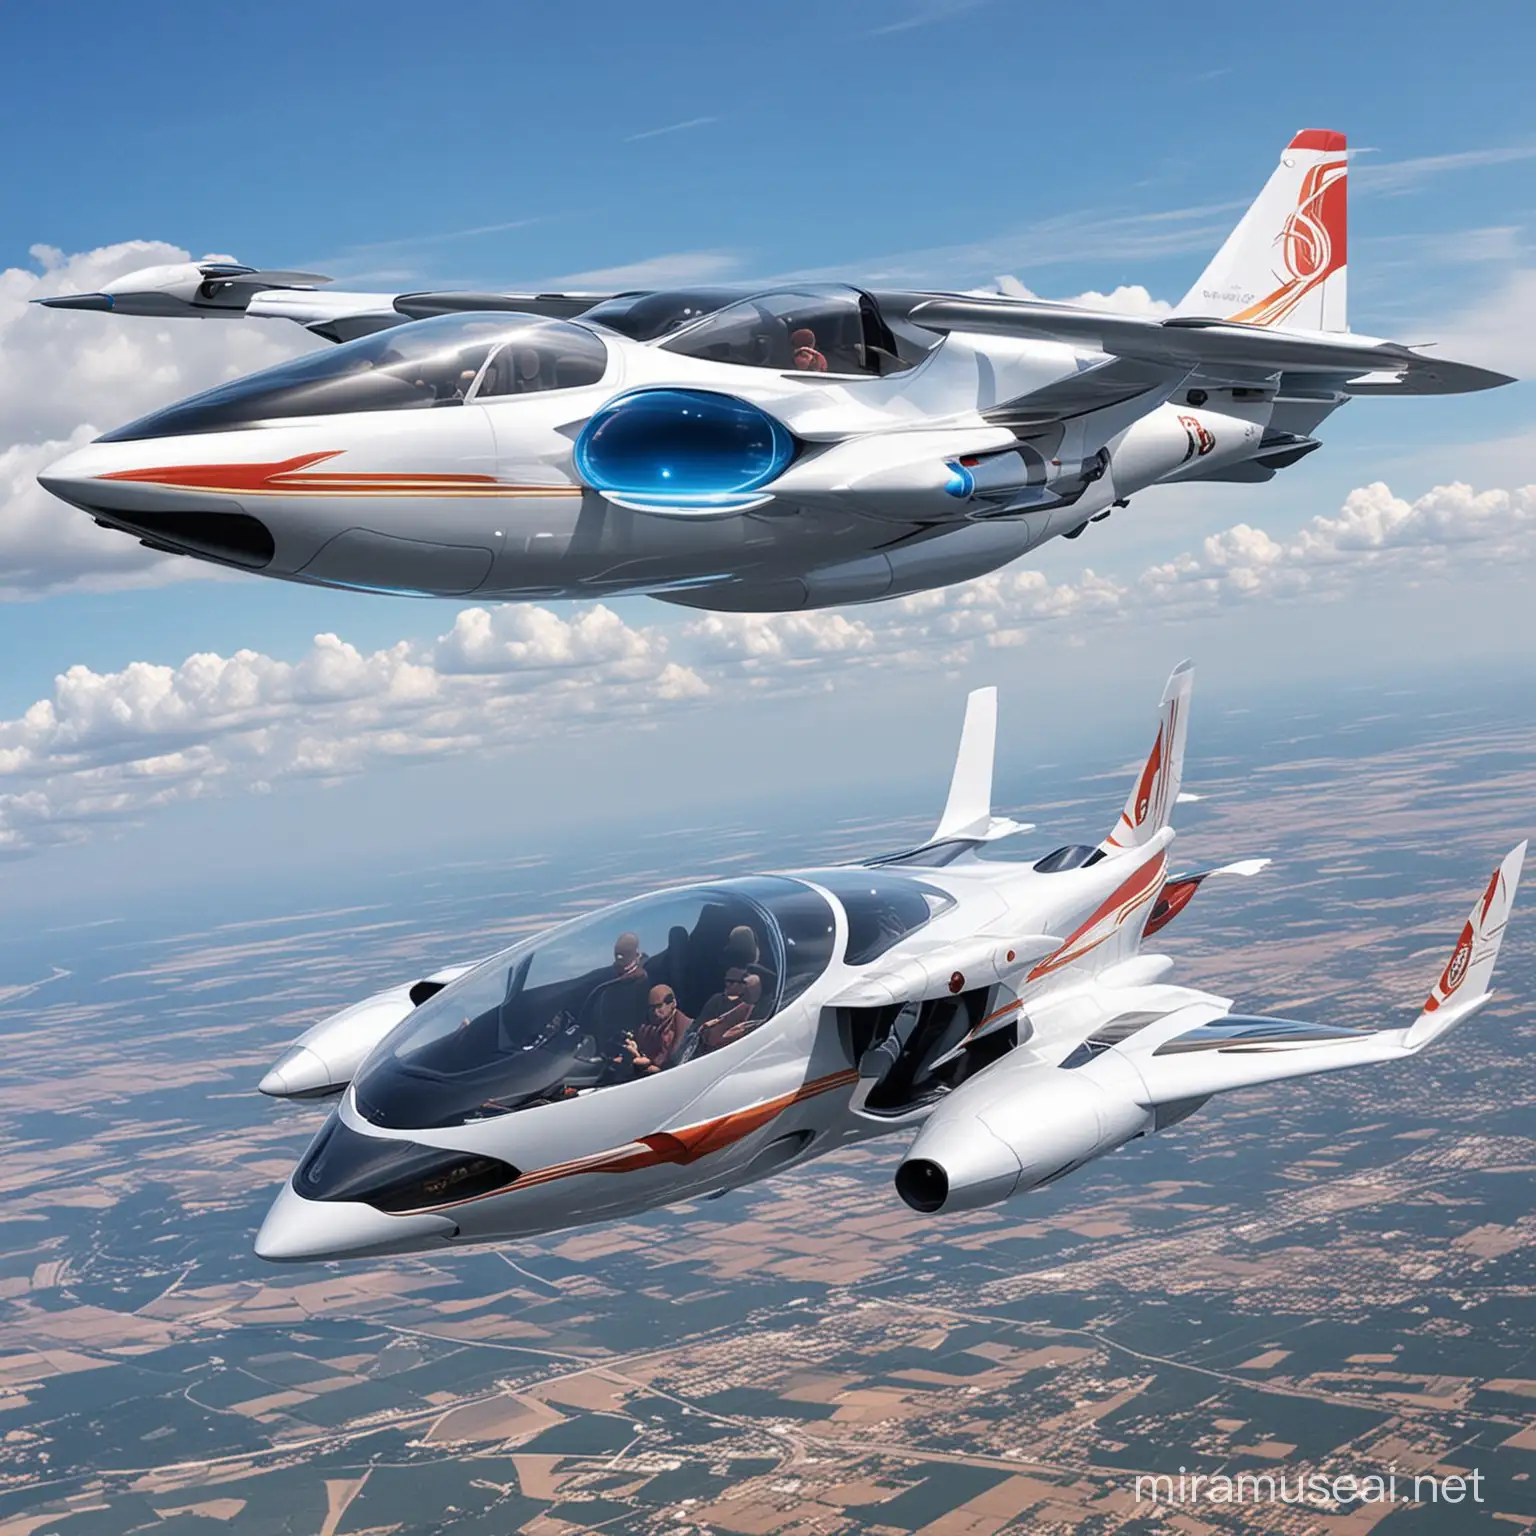 Carros voladores siendo aviones futuristicos